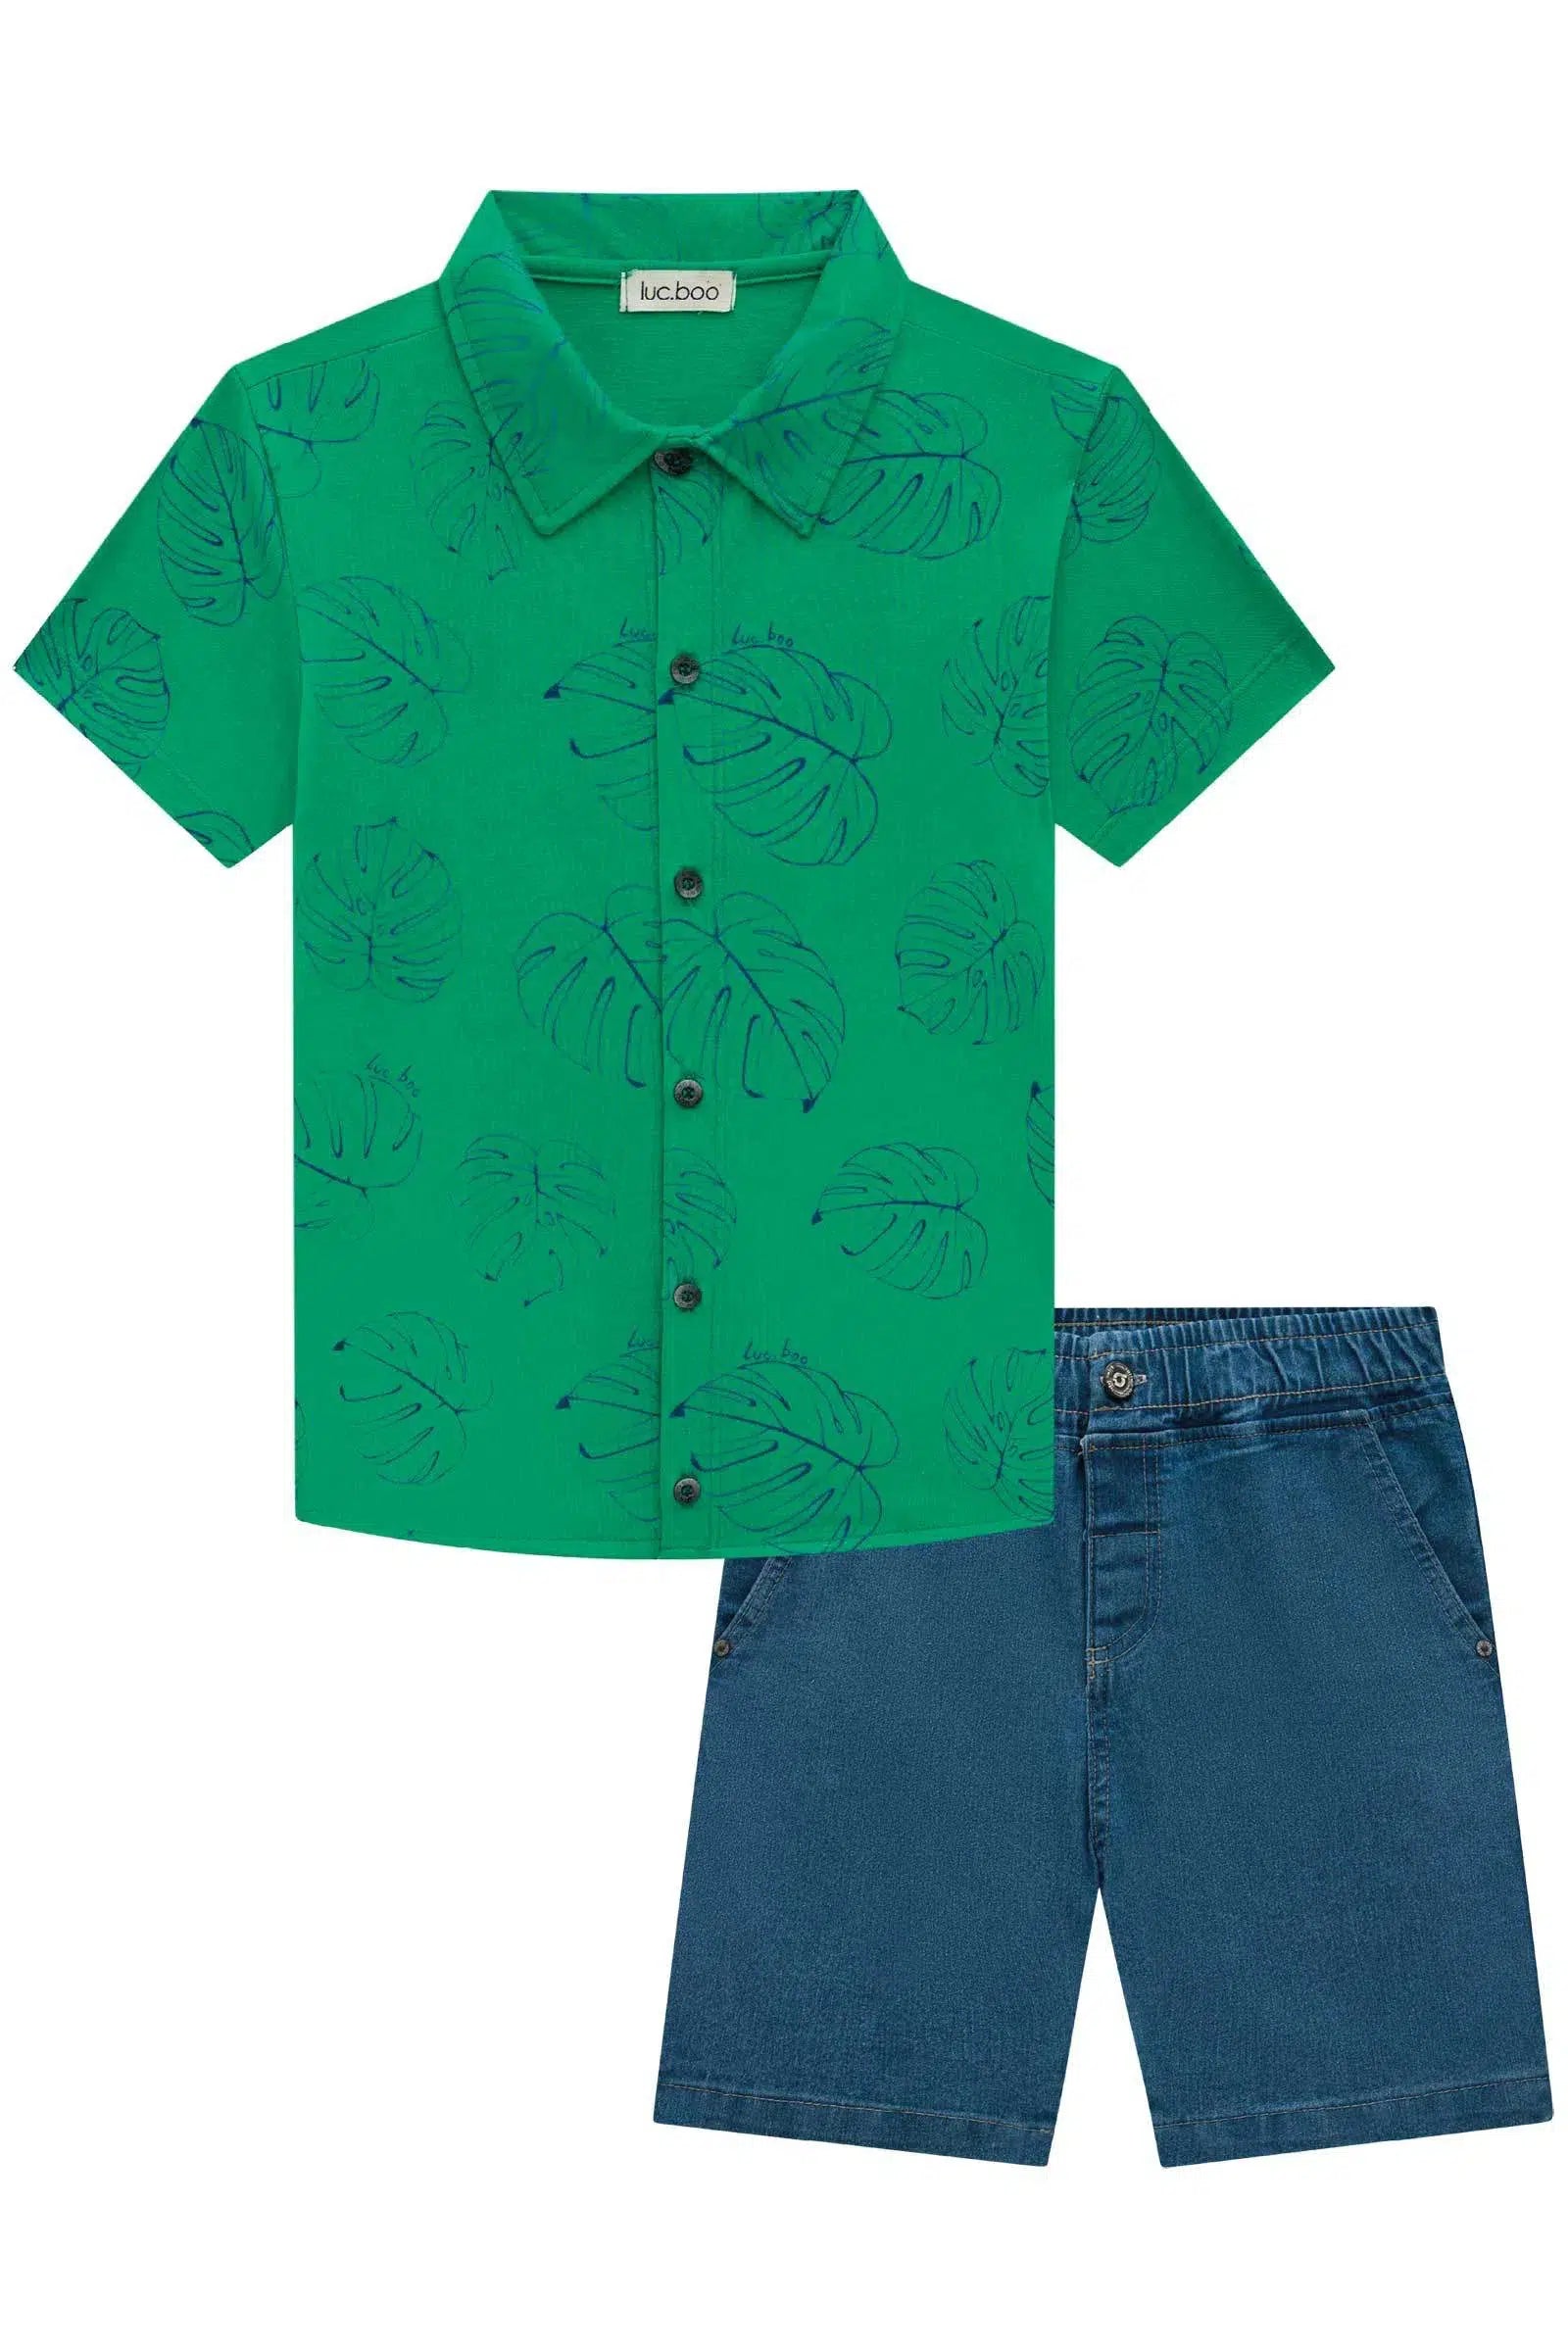 Conjunto de Camisa em Meia Malha e Bermuda em Jeans Bellini com Elastano 72623 LucBoo